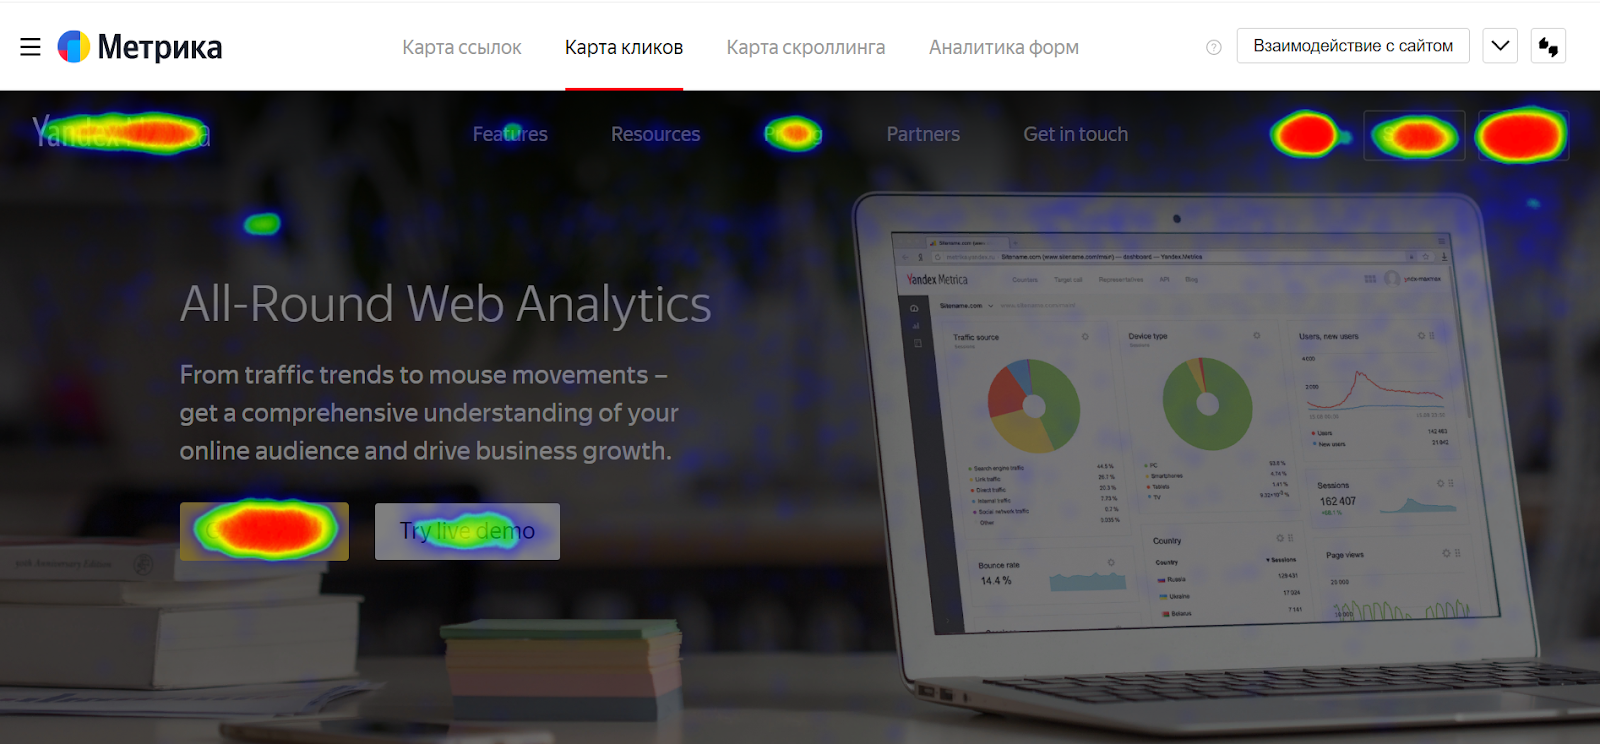 «Яндекс.Метрика»: обзор инструмента: главные отчёты, фишки и функции, о которых должны знать все